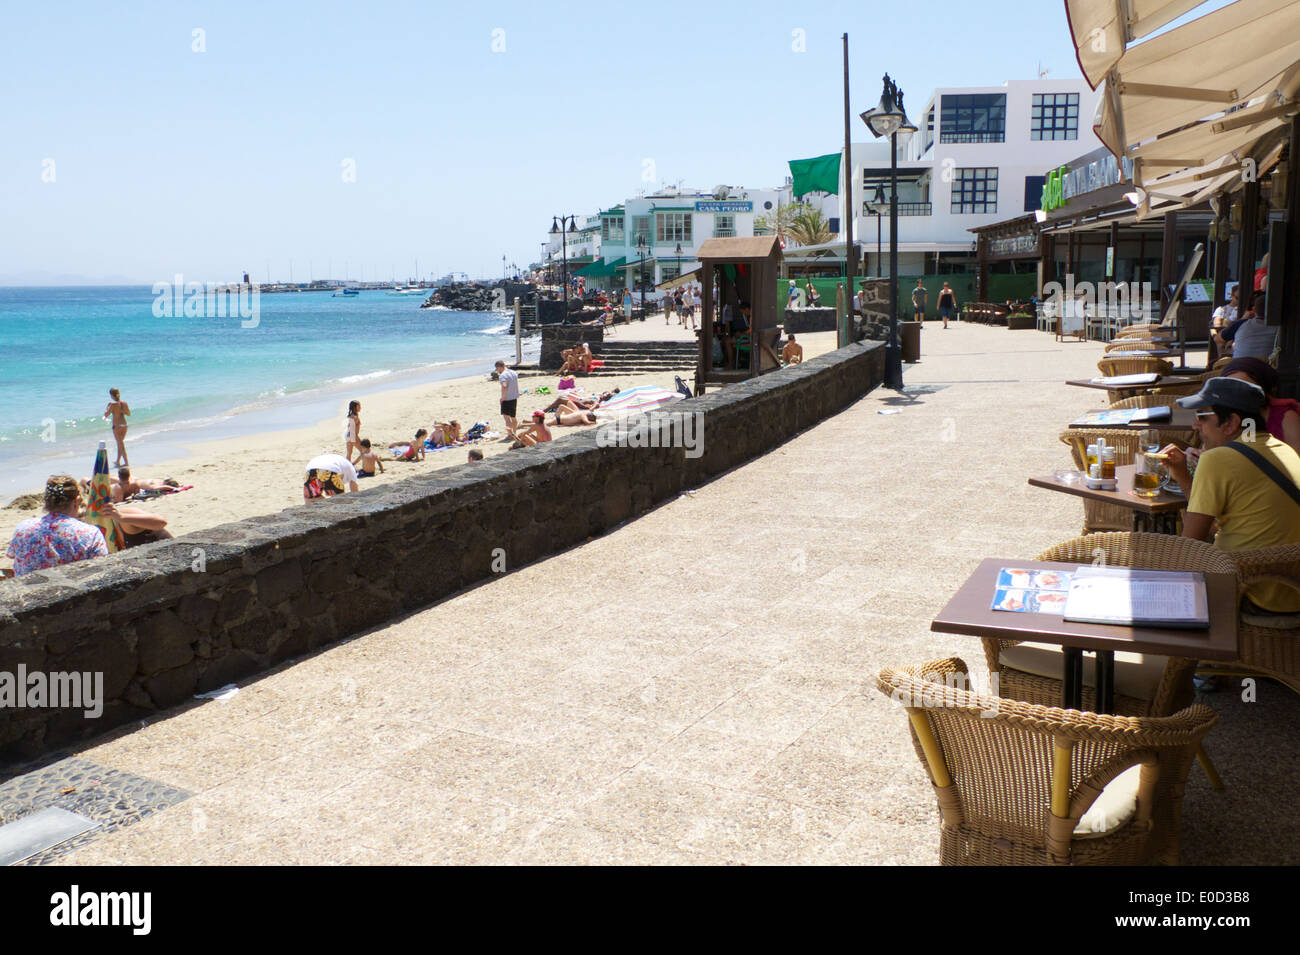 Promenade und Strand von Playa Blanca in Lanzarote, Kanarische Inseln, Spanien Stockfoto